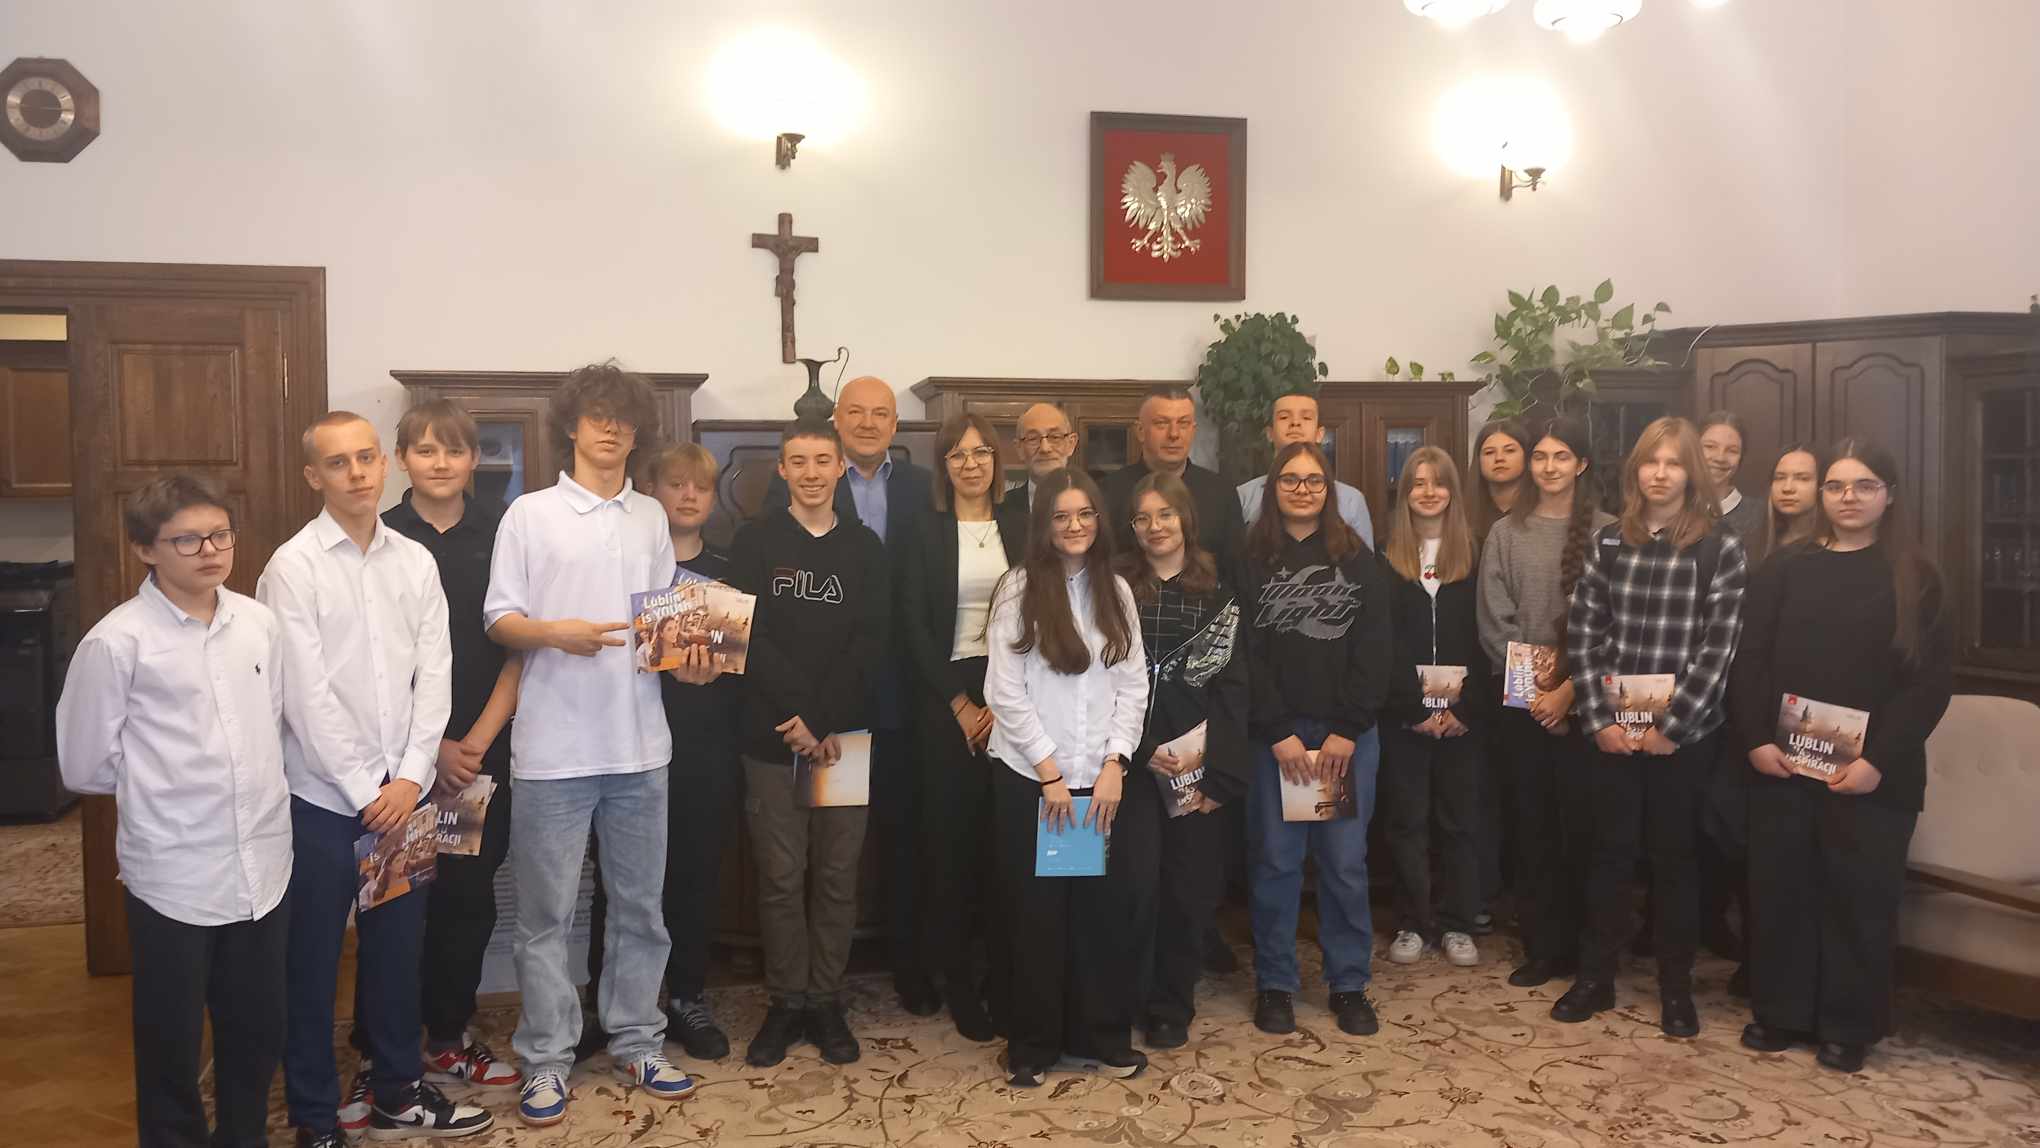 Uczniowie Szkoły Podstawowej nr 32 w Lublinie pozują do zdjęcia w sali wiceprzewodniczącego Rady Miasta Lublin.